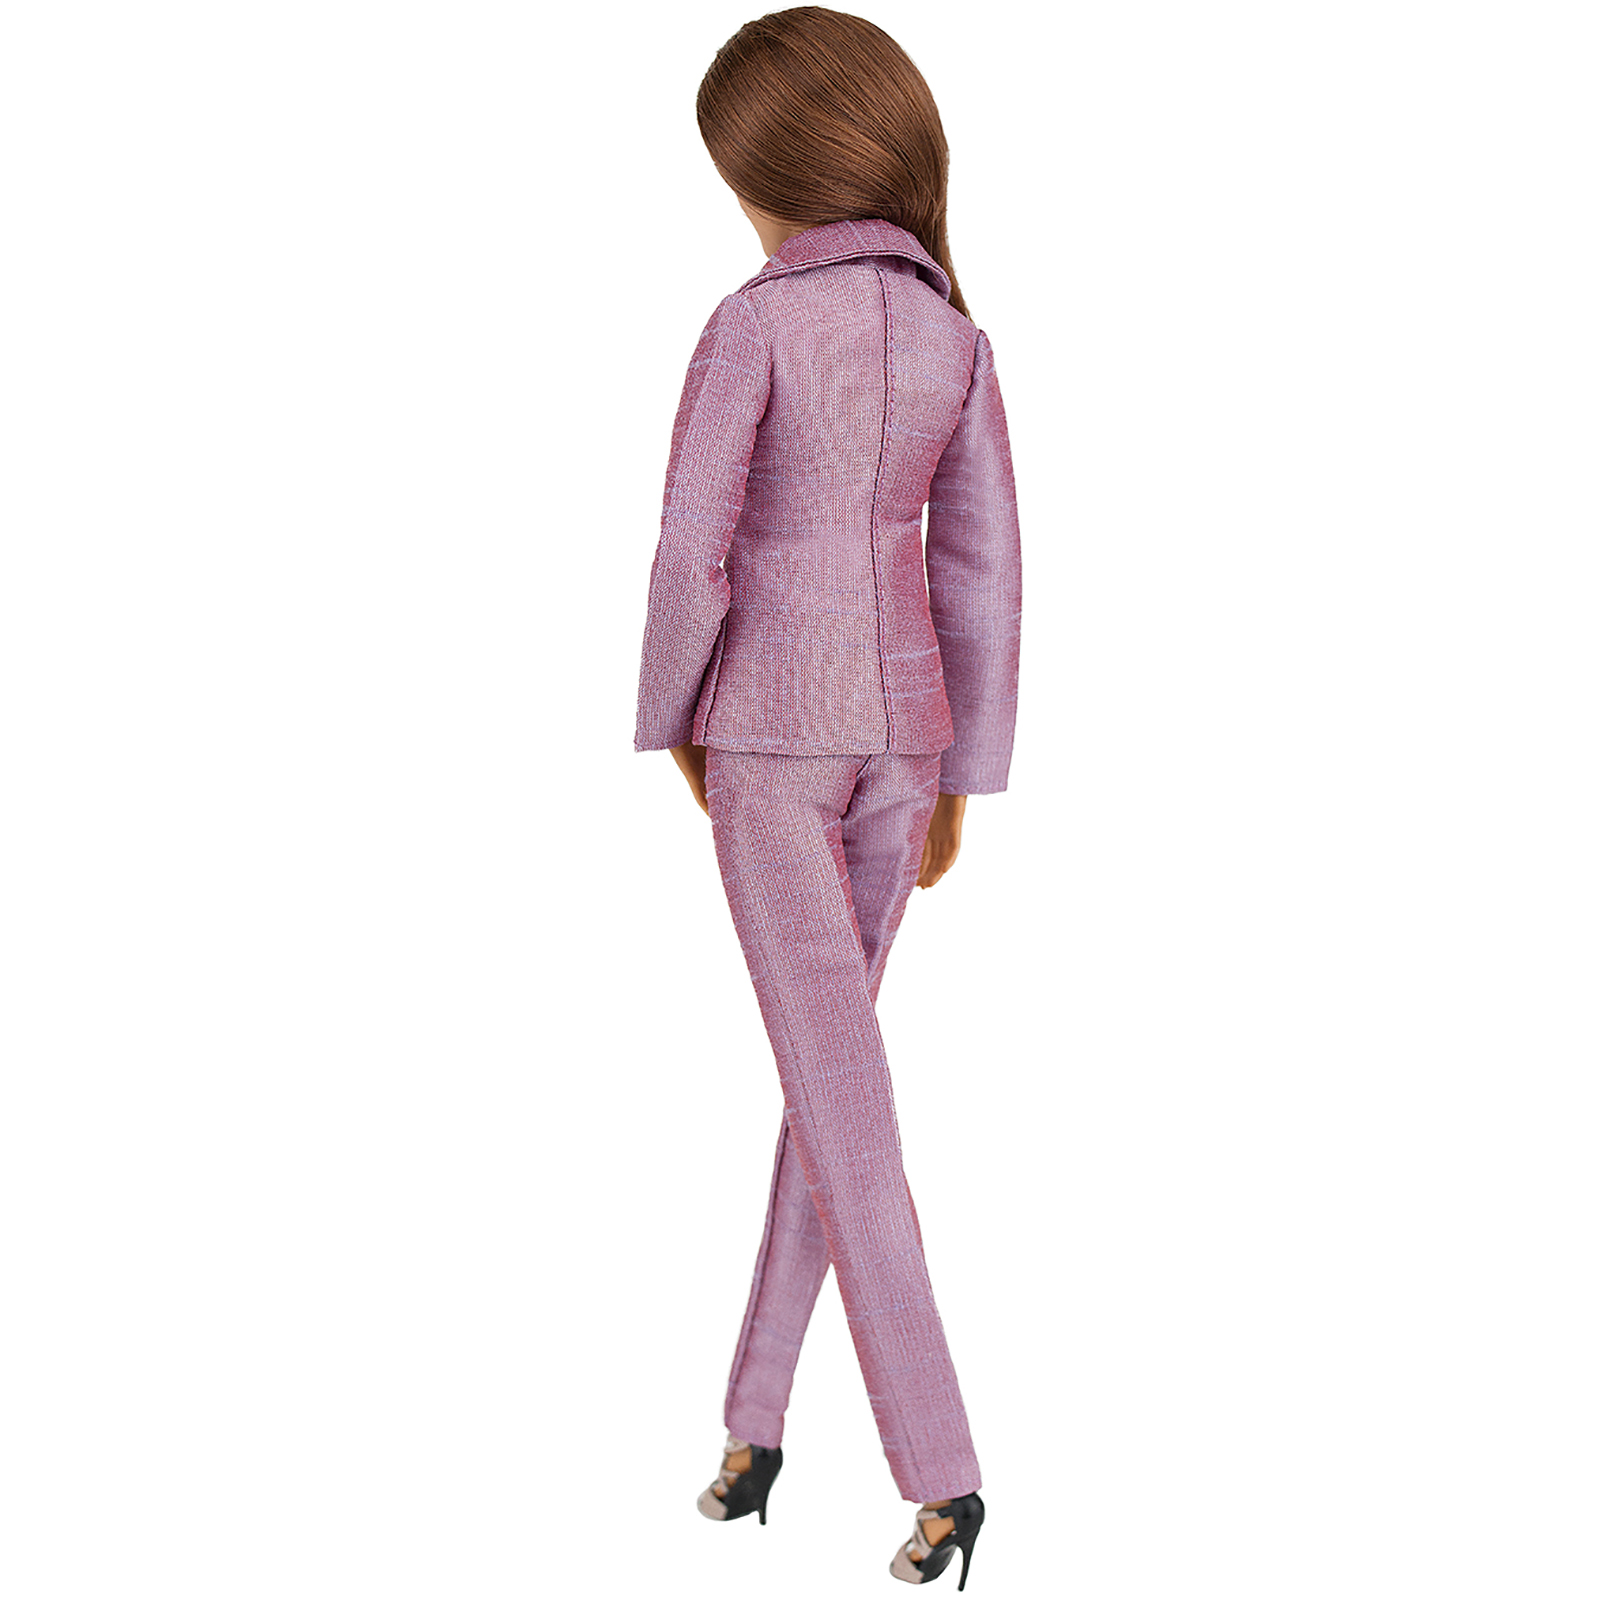 Шелковый брючный костюм Эленприв Лилово-розовый для куклы 29 см типа Барби FA-011-14 - фото 8